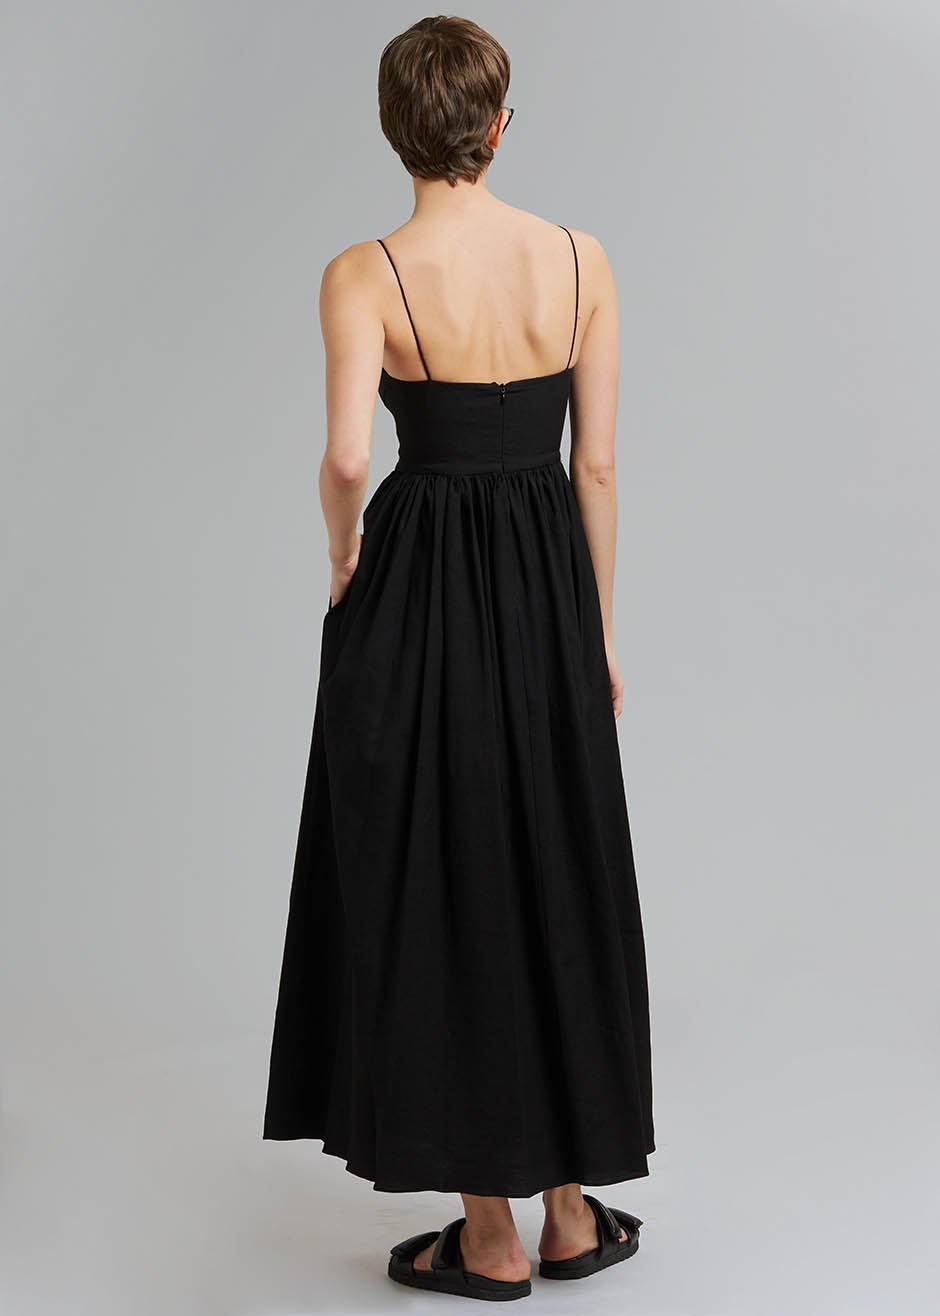 Matteau Linen Cami Dress - Black - 7